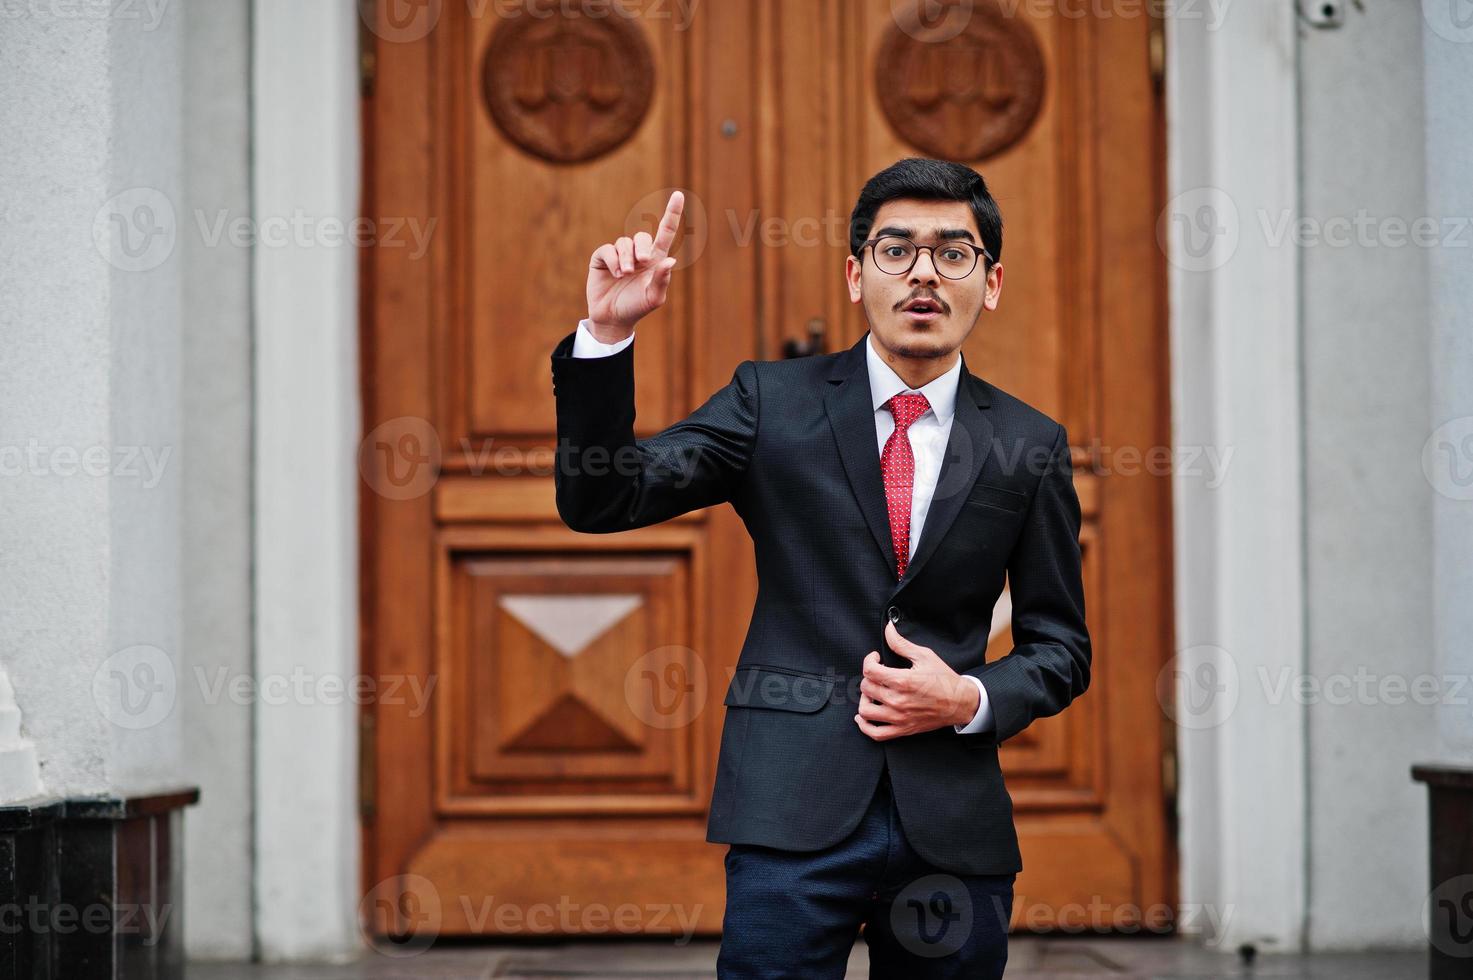 indiase jonge man met een bril, draag een zwart pak met rode stropdas die buiten tegen de deur van het gebouw staat, laat de vinger zien, hij heeft een idee. foto